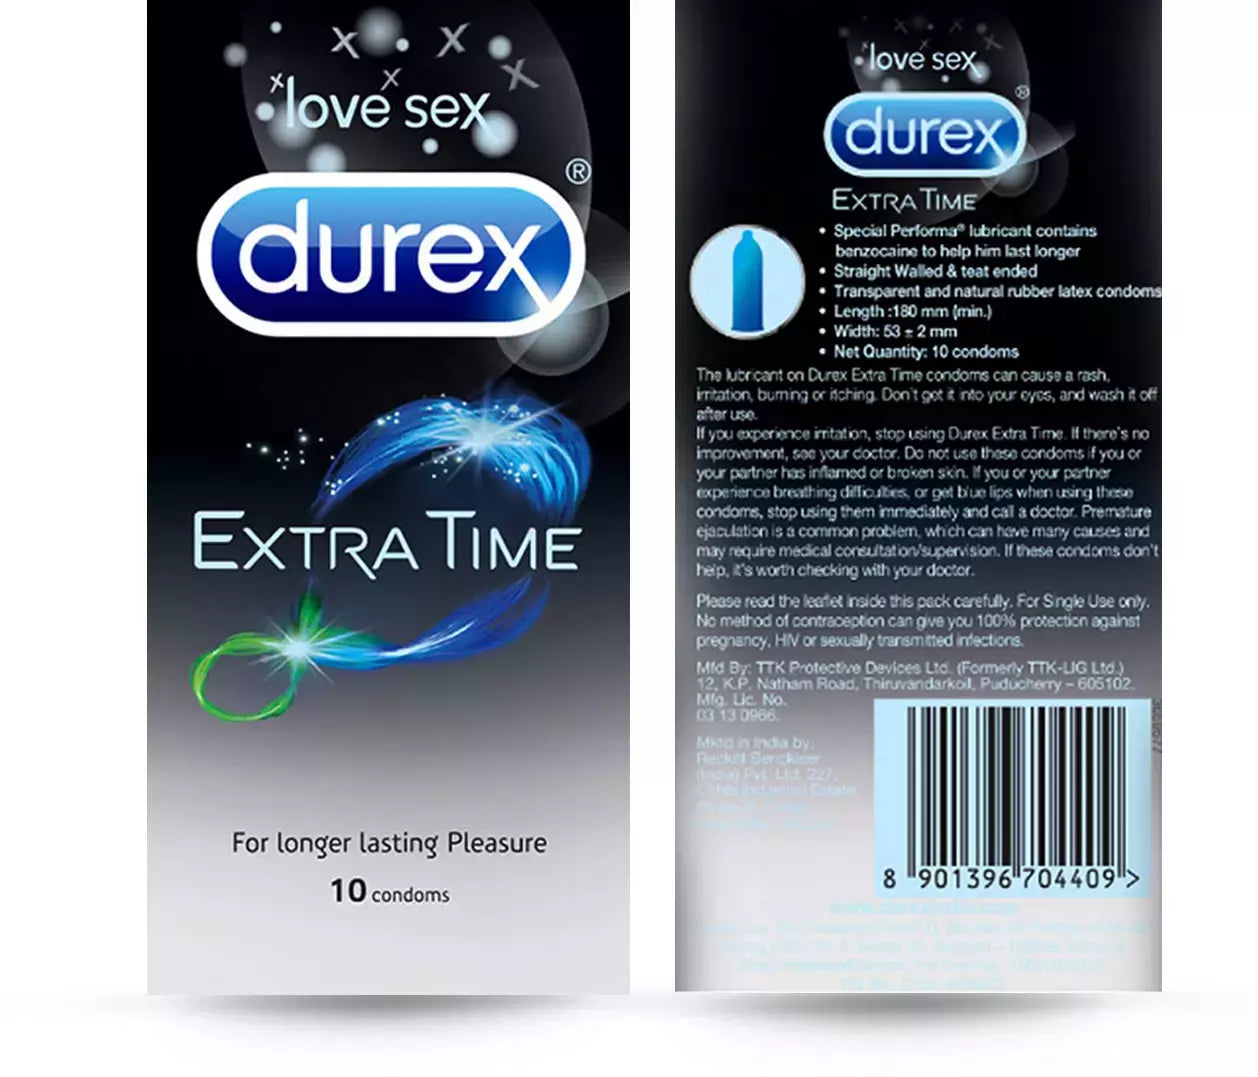 DUREX EXTRA TIME CONDOM (ELITE) for Men